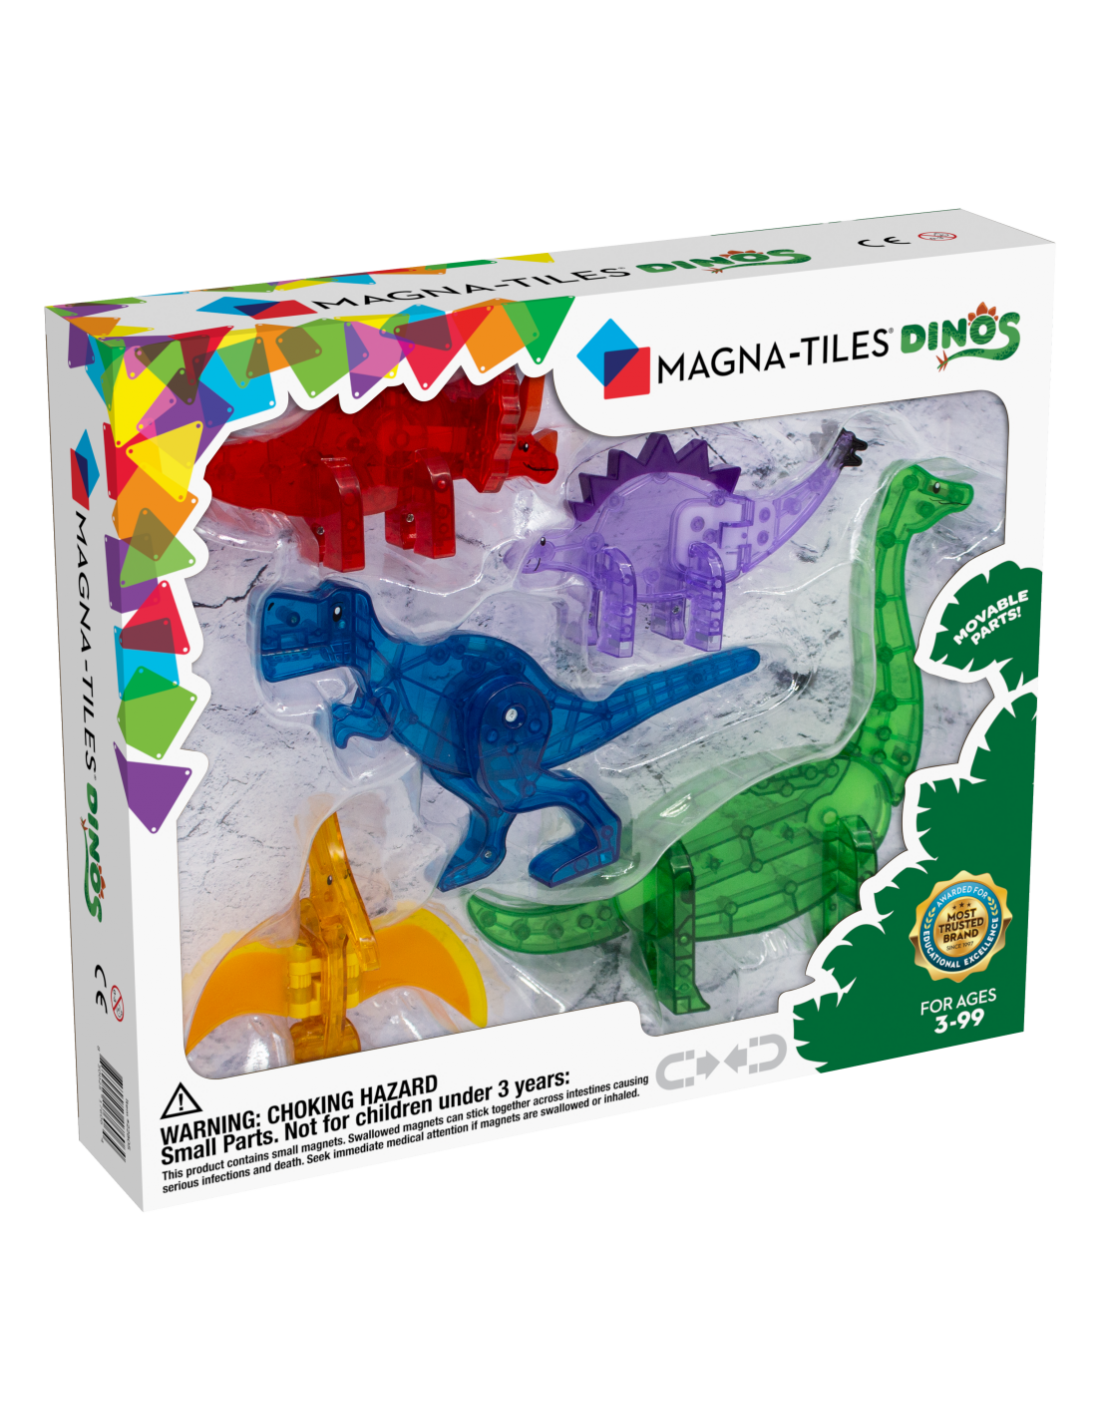 Magna-Tiles Dino's | 5 Pieces